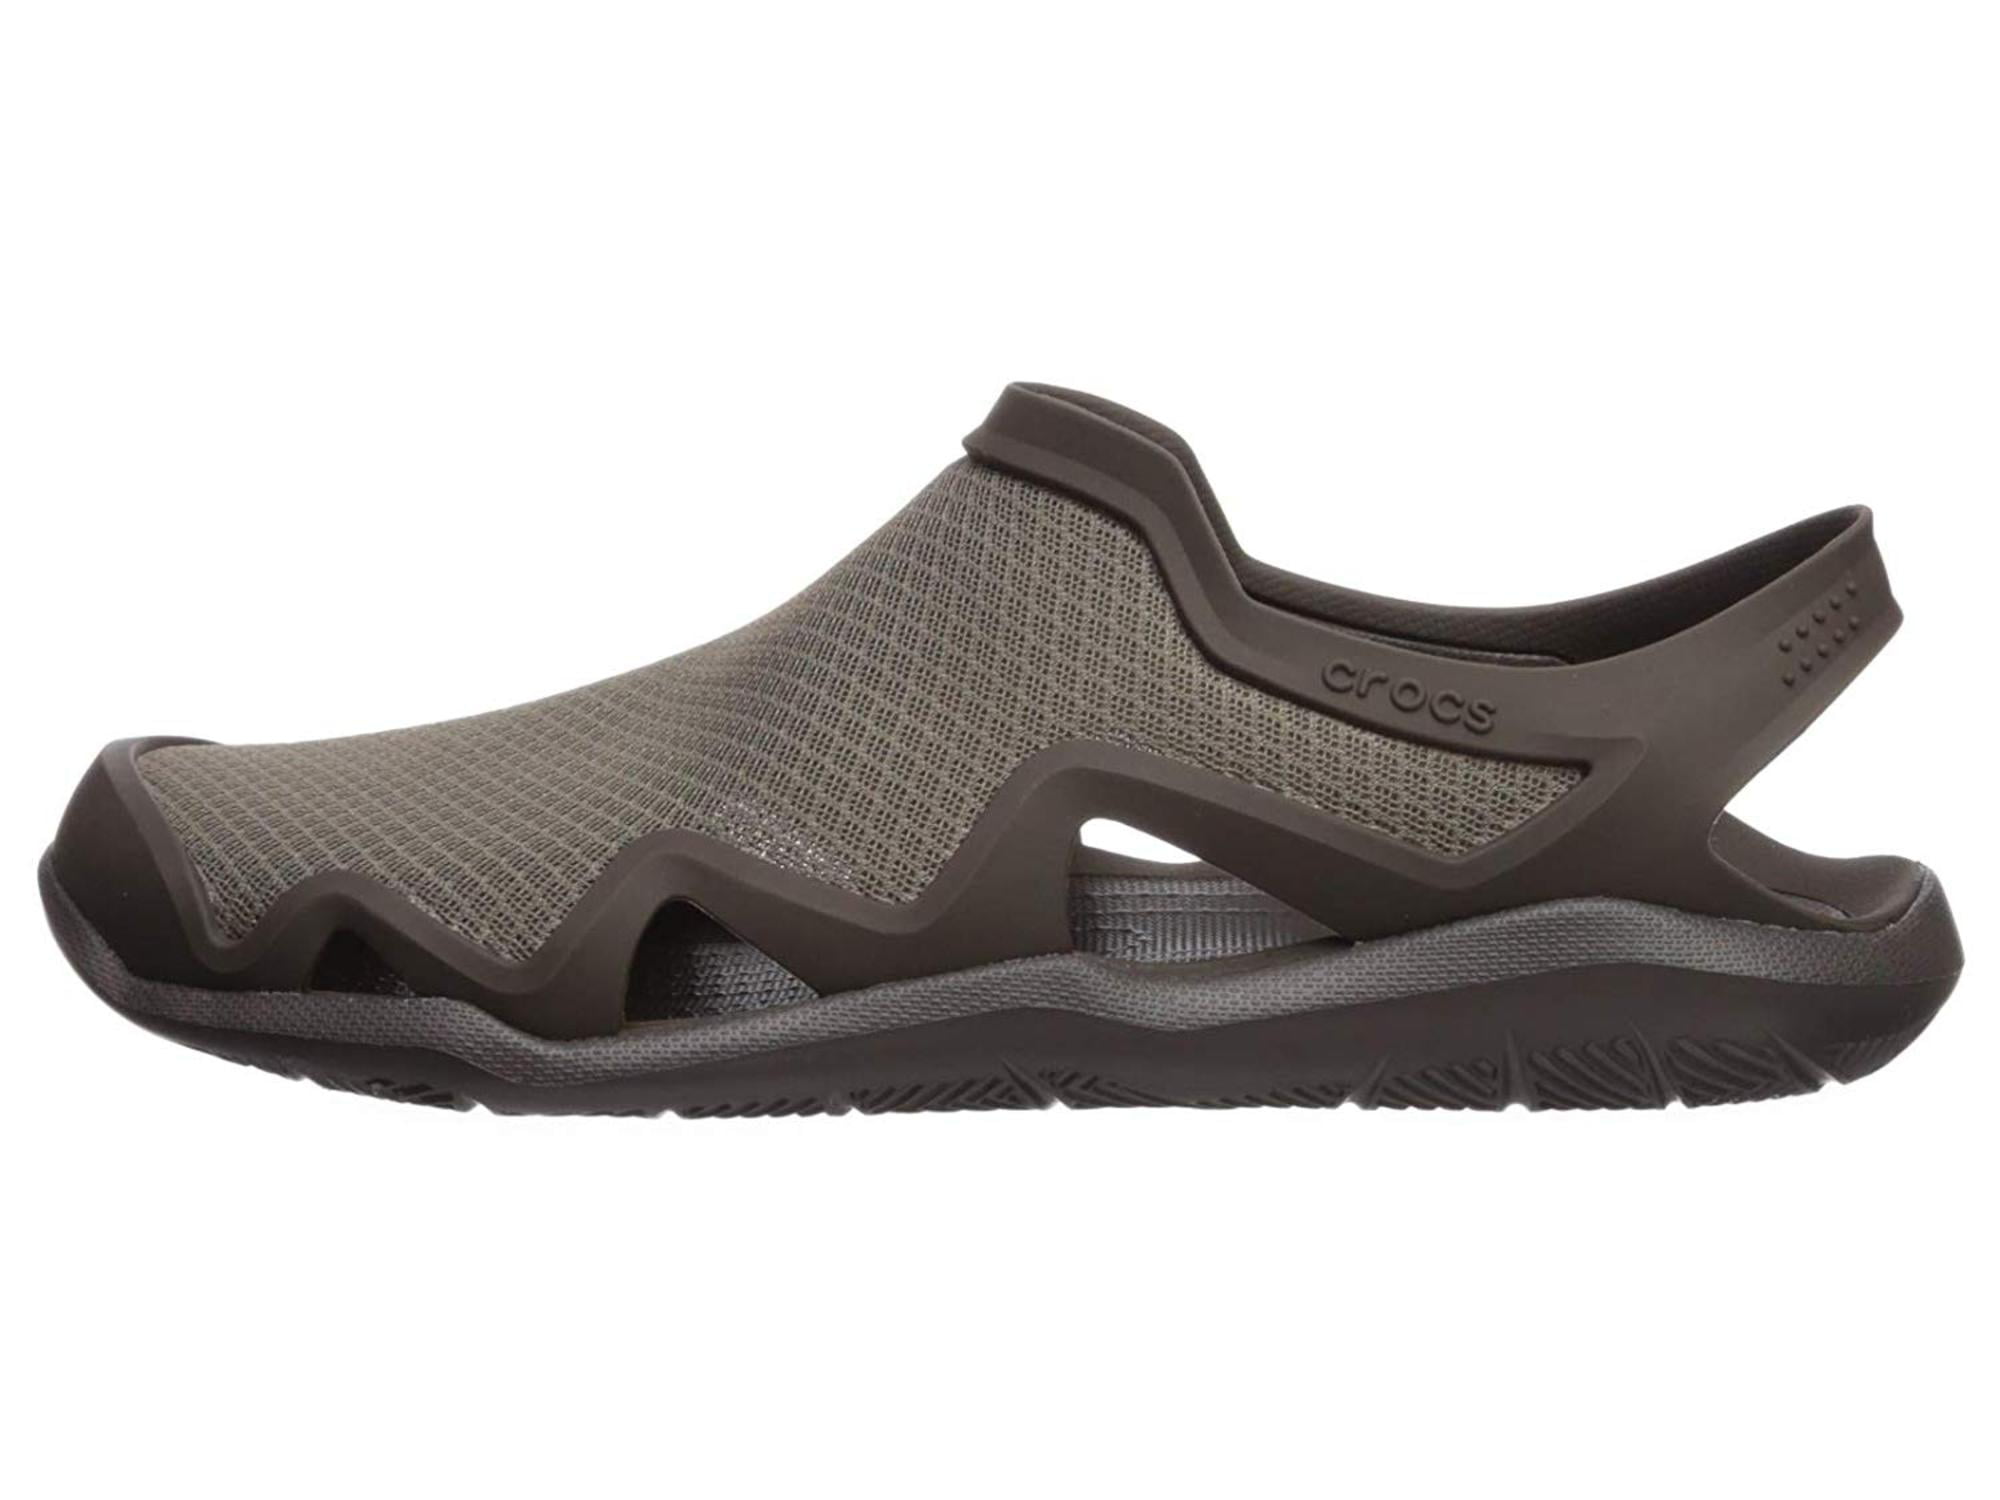 crocs men's swiftwater mesh wave water shoe